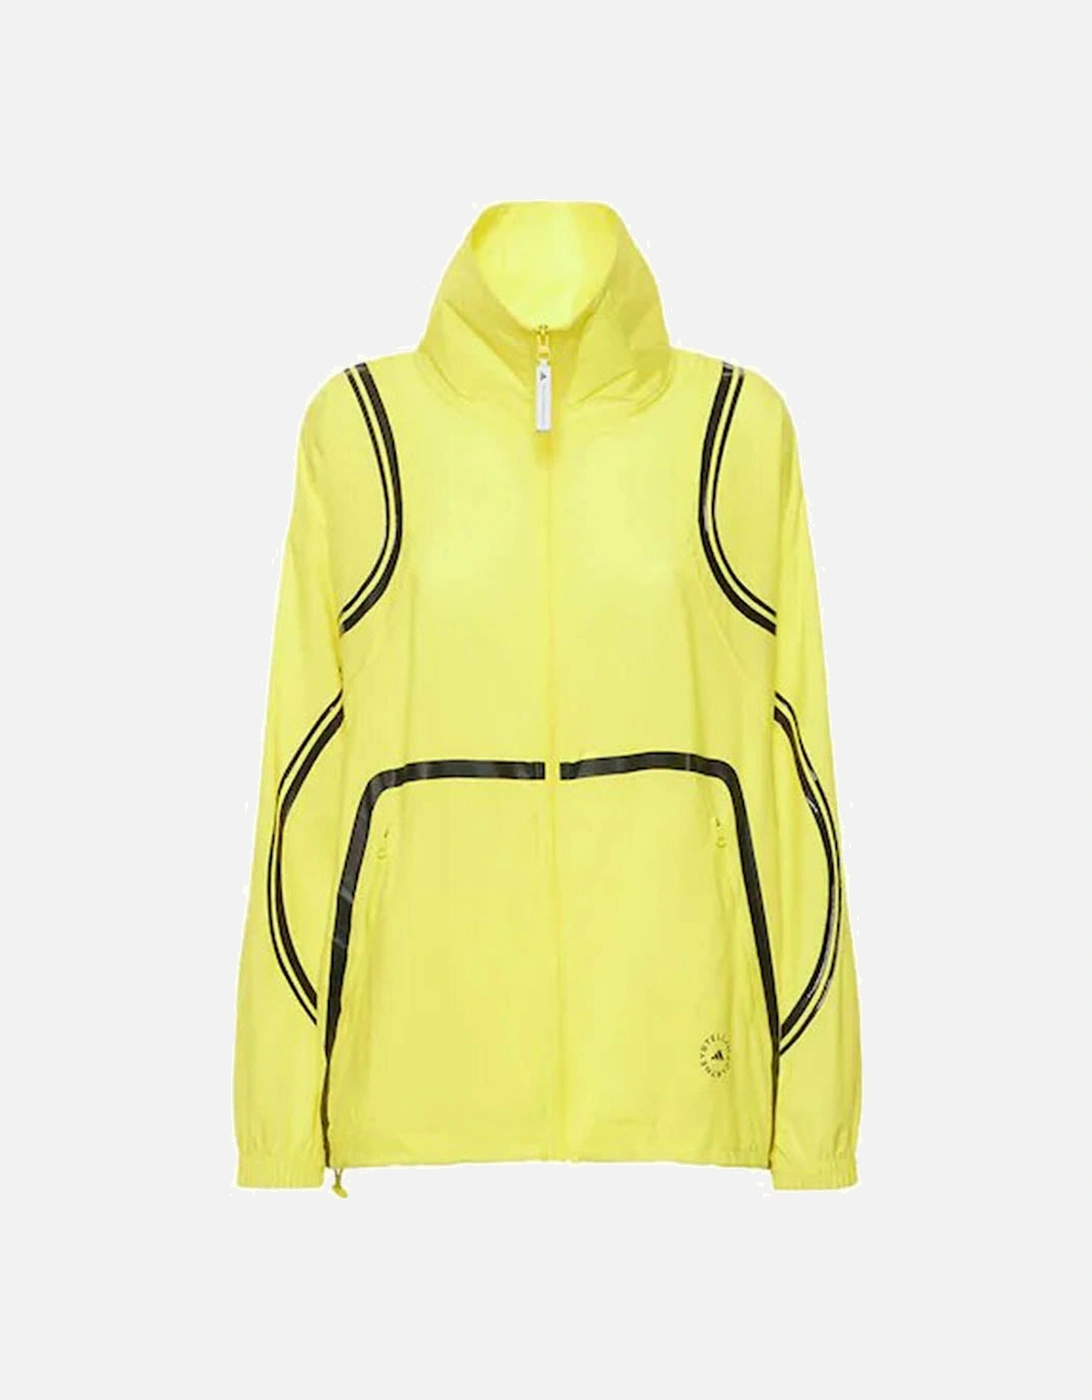 adidas by Stella McCartney Womens Truepace Jacket Yellow, 2 of 1